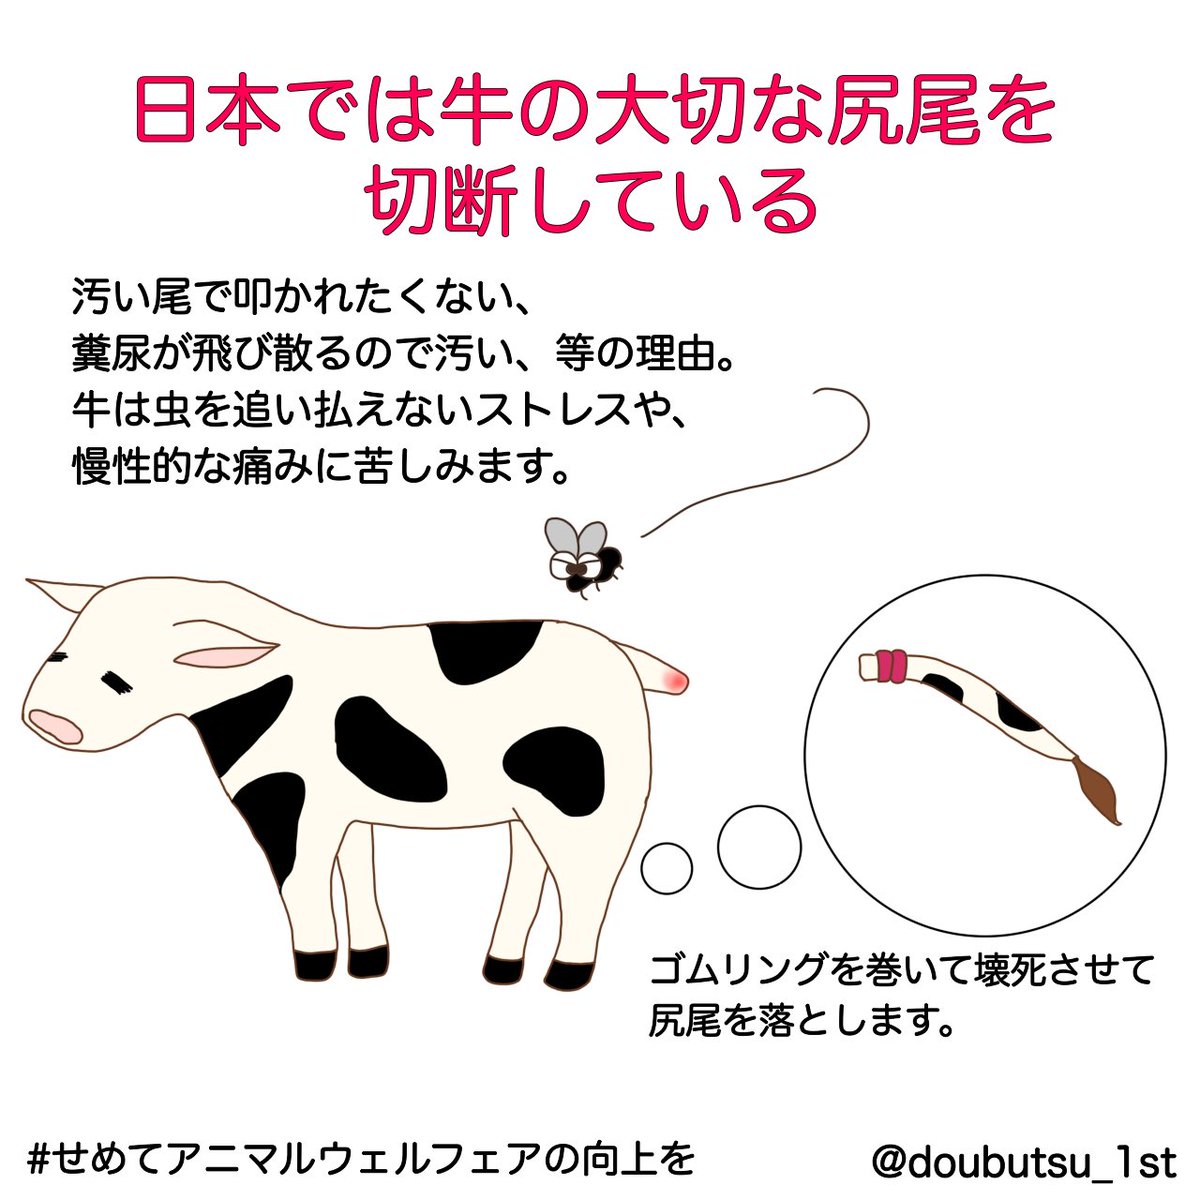 「汚い尾っぽで叩かれたくない」などの理由から、日本では乳牛のしっぽを切断する場合があります😢 すべての農家ではありませんが、およそ10万2800頭の乳牛のしっぽが切断されていると言われています😞 牛は、痛みや虫をはらえないストレスに悩まされます #アニマルウェルフェアの向上を